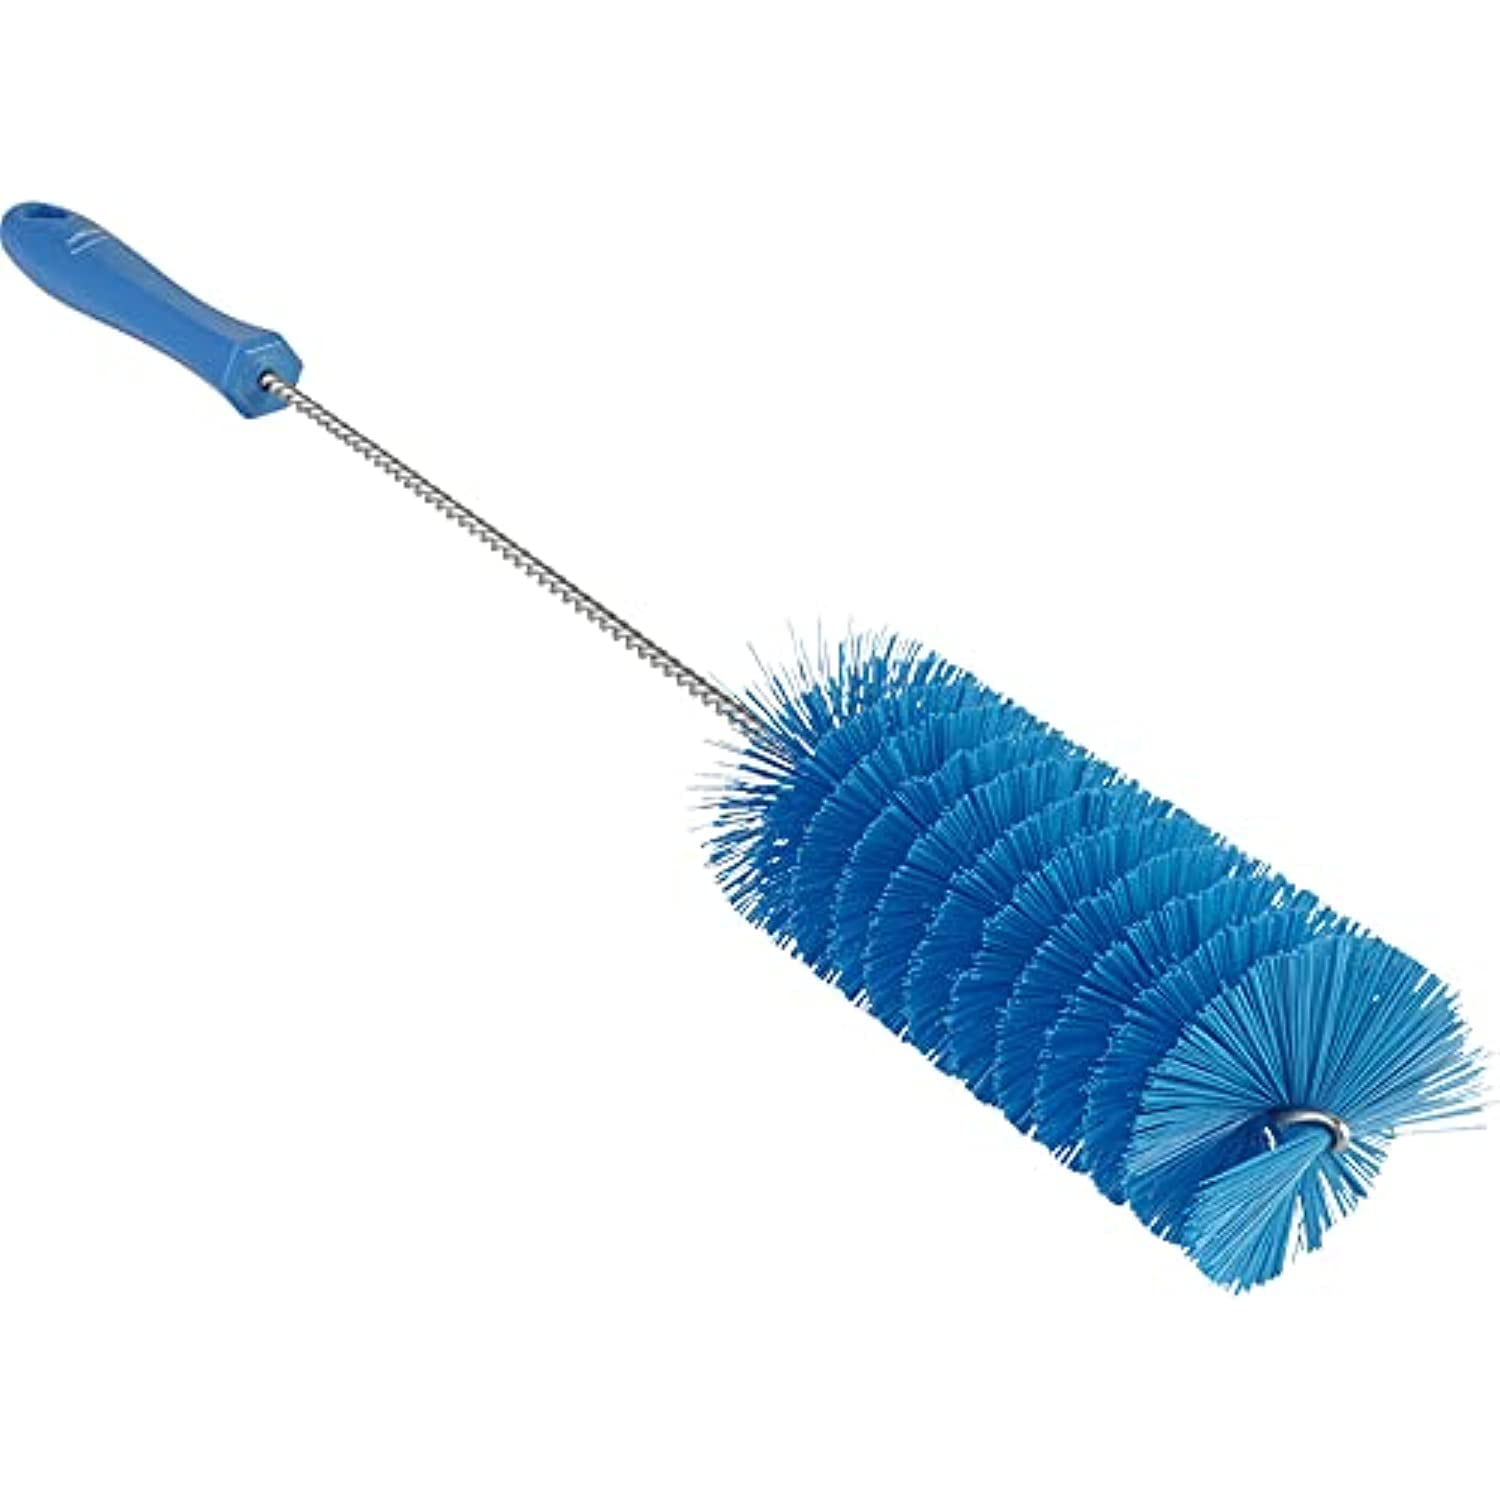 Bristle Magic Non Toxic Brush Cleaner